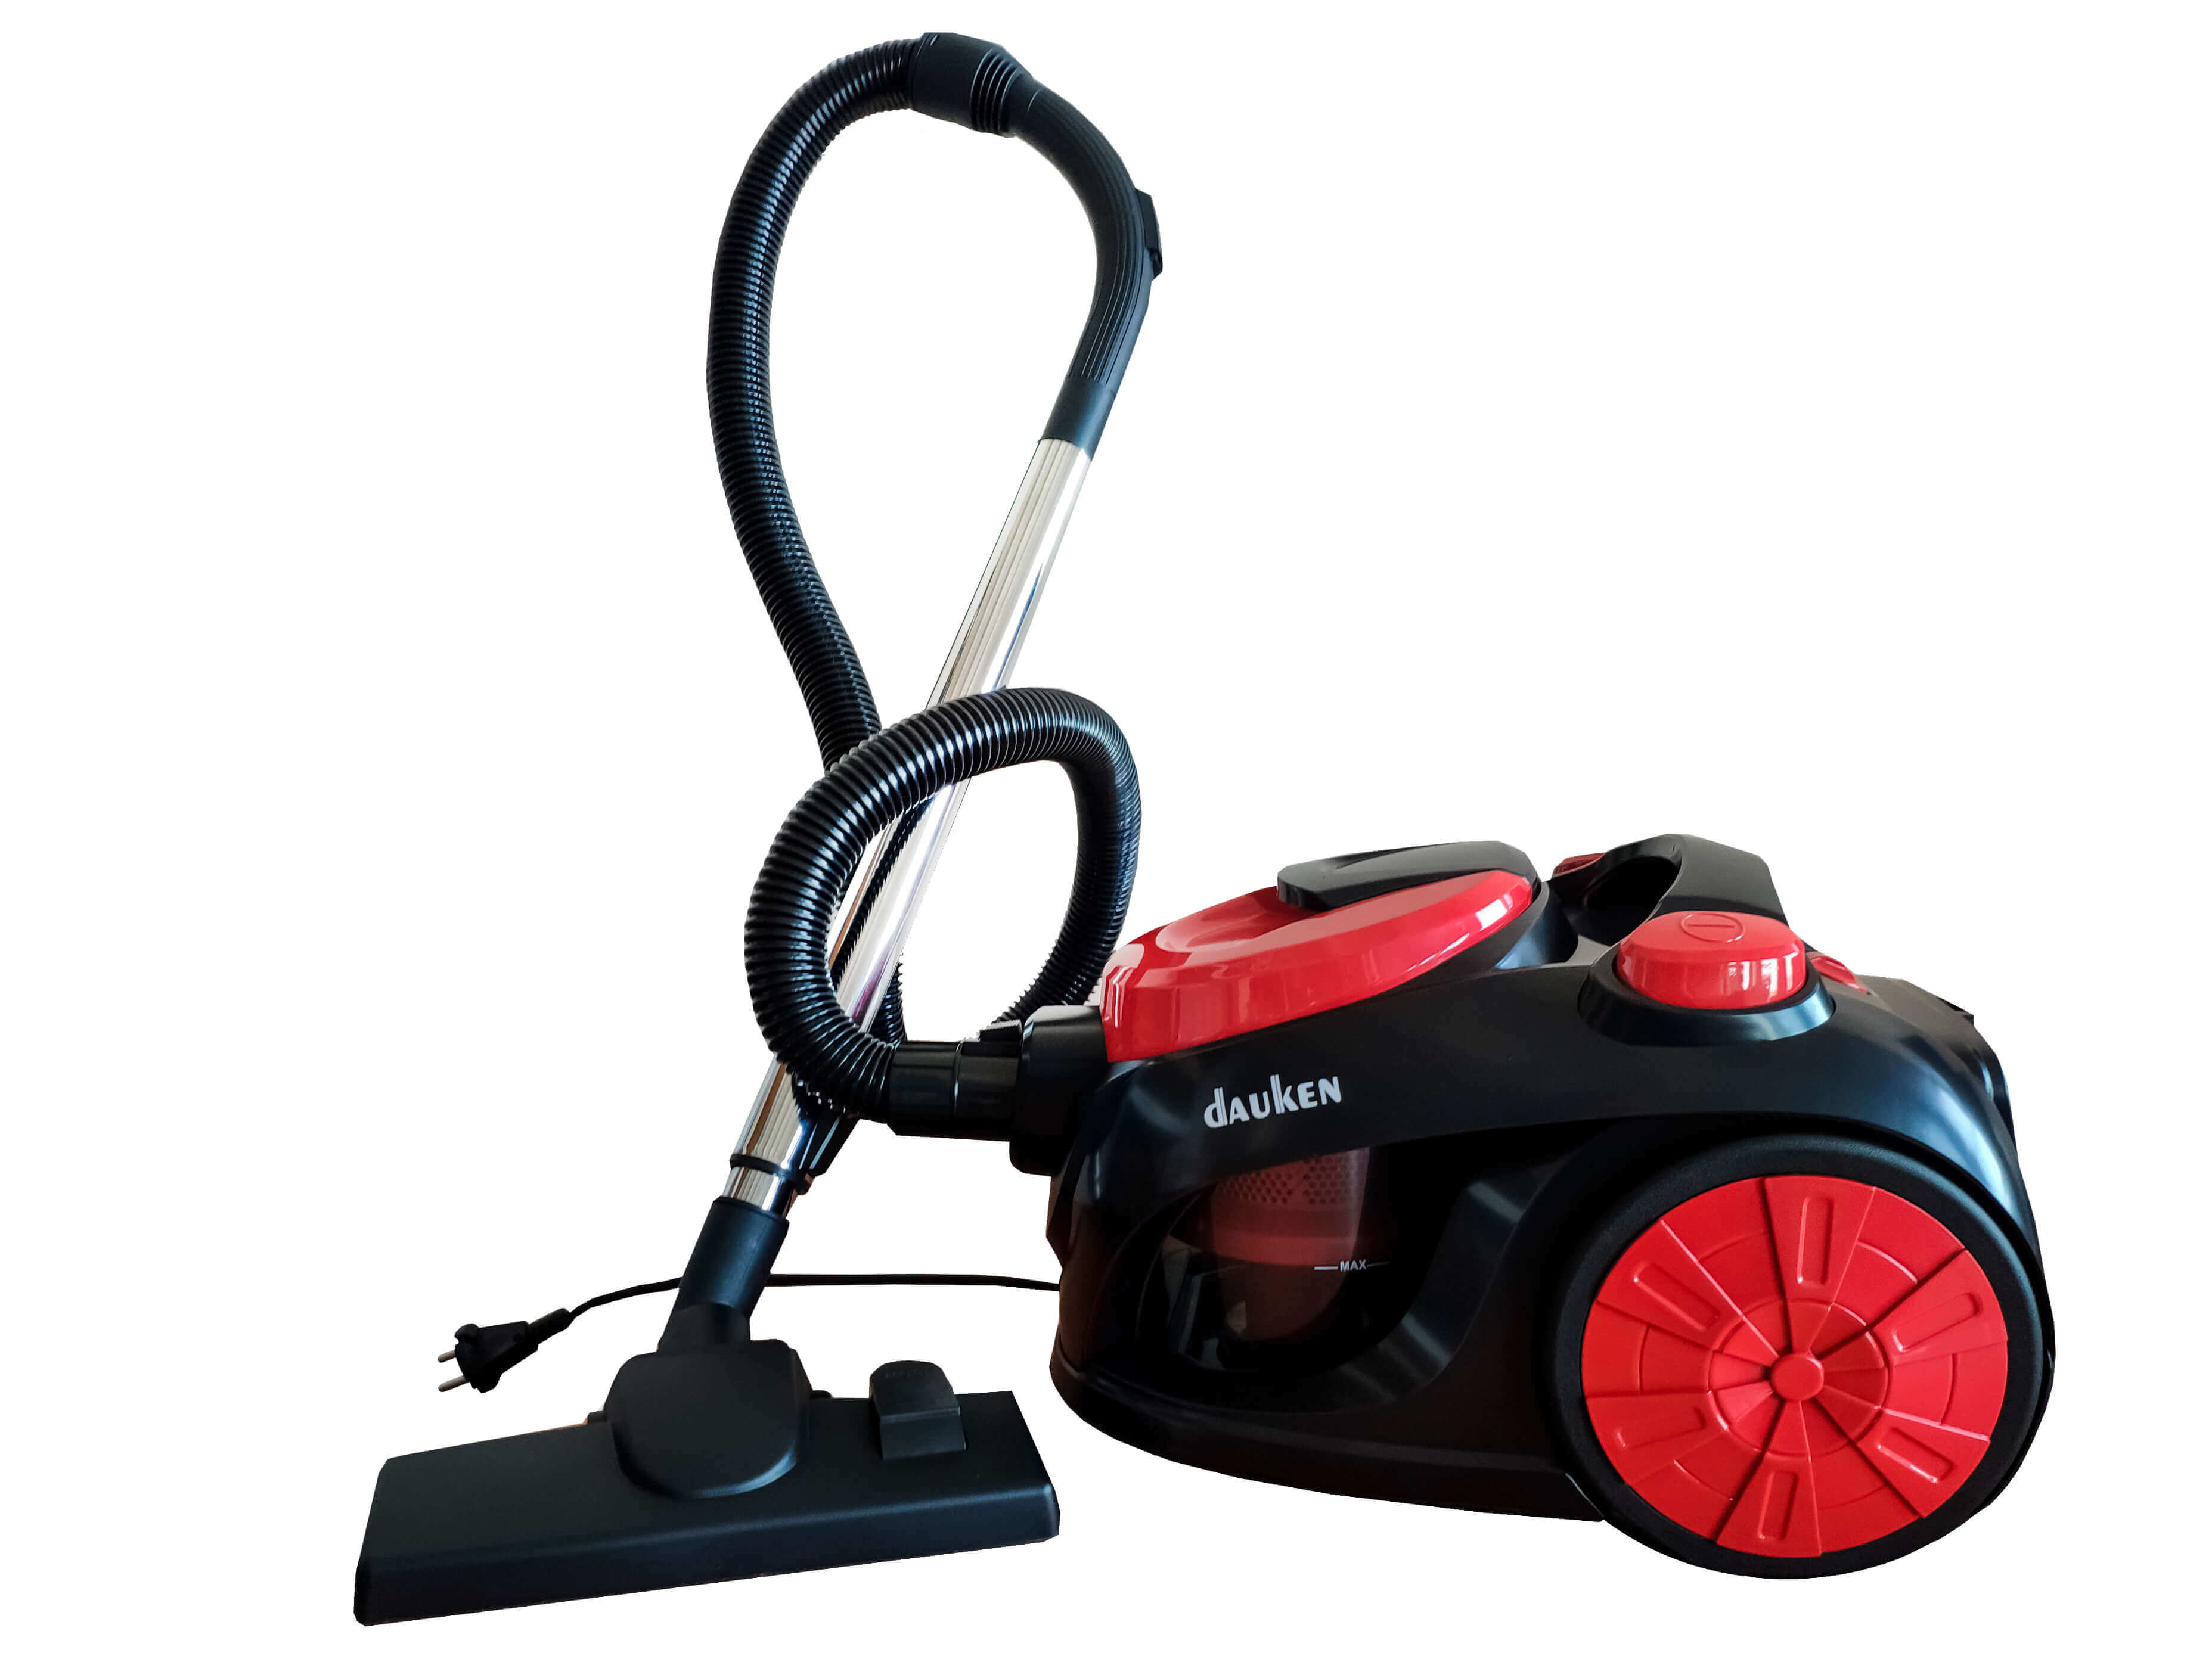 Vacuum cleaner Dauken DW600